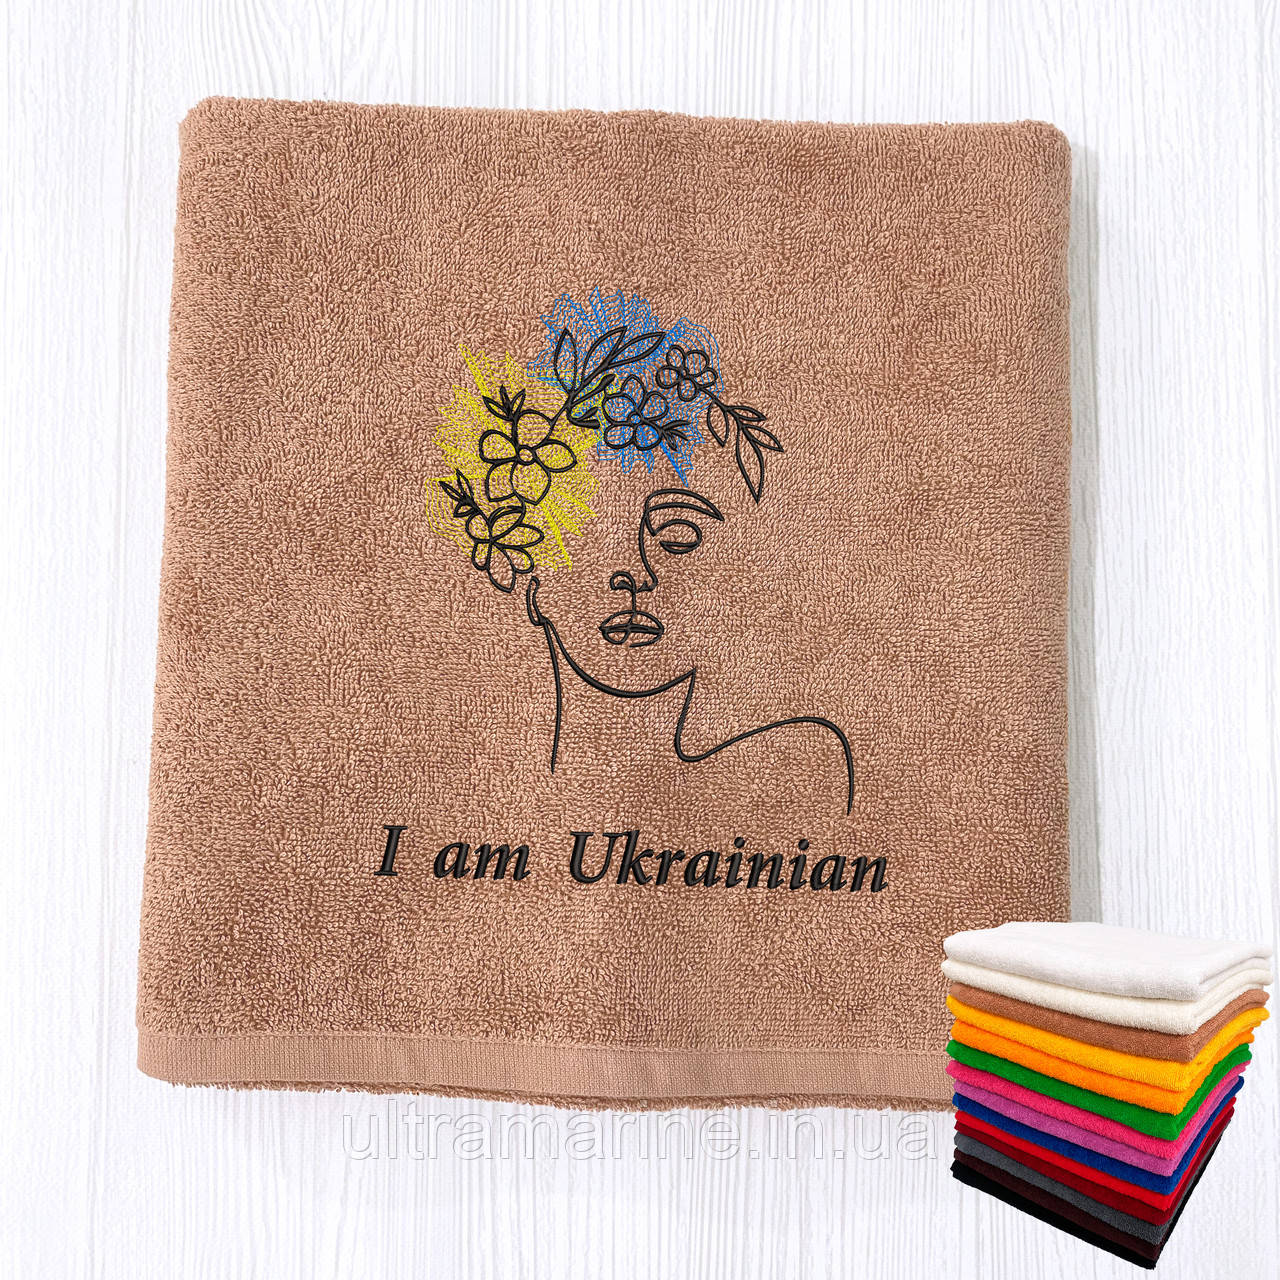 Подарунок жінці на 8 березня - рушник з вишивкою "I am Ukrainian!" (патріотичний подарунок)